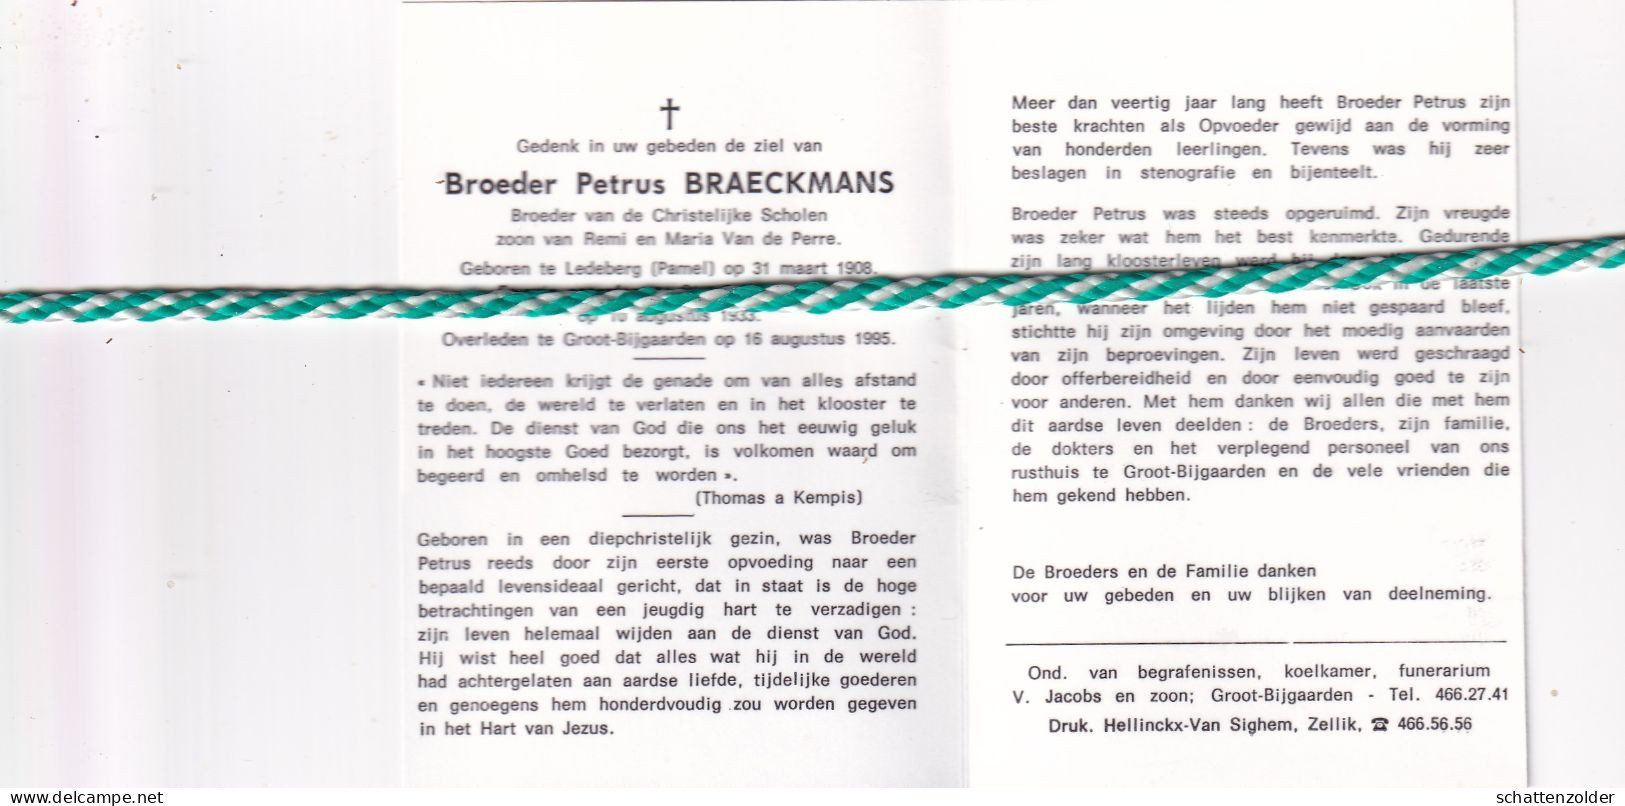 Broeder Petrus Braeckmans, Ledeberg (Pamel) 1908, Groot-Bijgaarden 1995. Foto - Overlijden